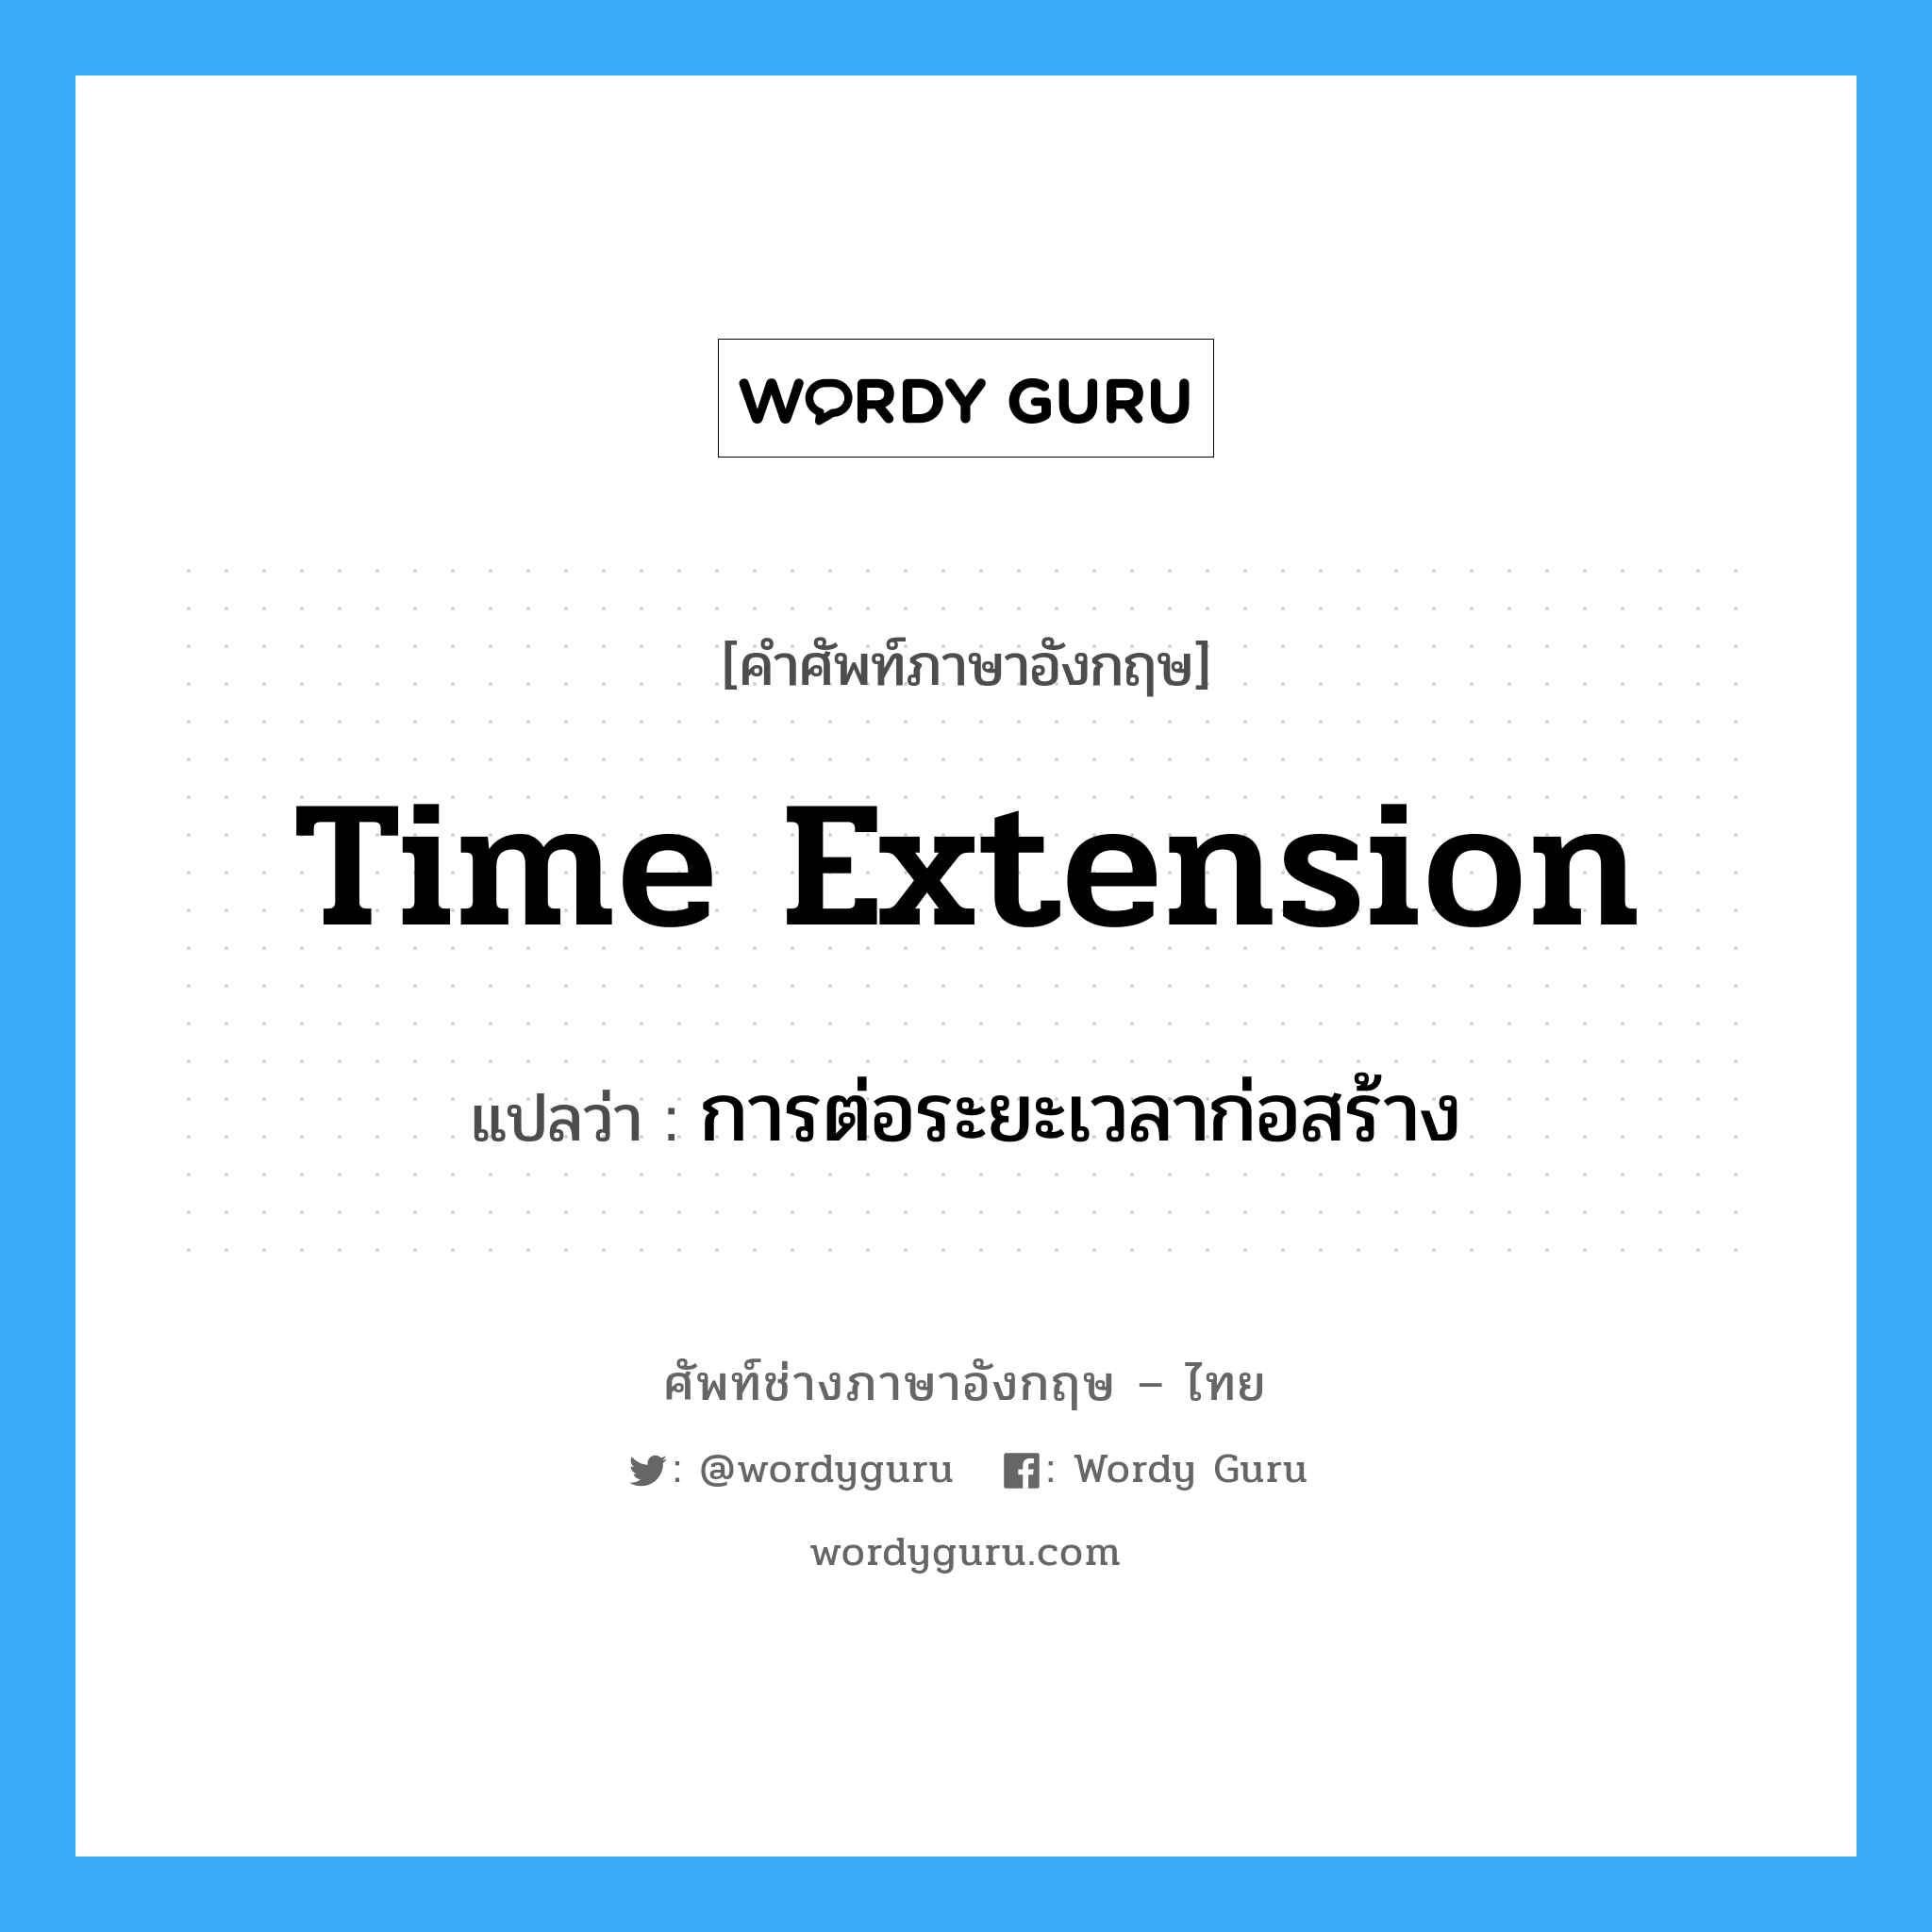 Time Extension แปลว่า?, คำศัพท์ช่างภาษาอังกฤษ - ไทย Time Extension คำศัพท์ภาษาอังกฤษ Time Extension แปลว่า การต่อระยะเวลาก่อสร้าง